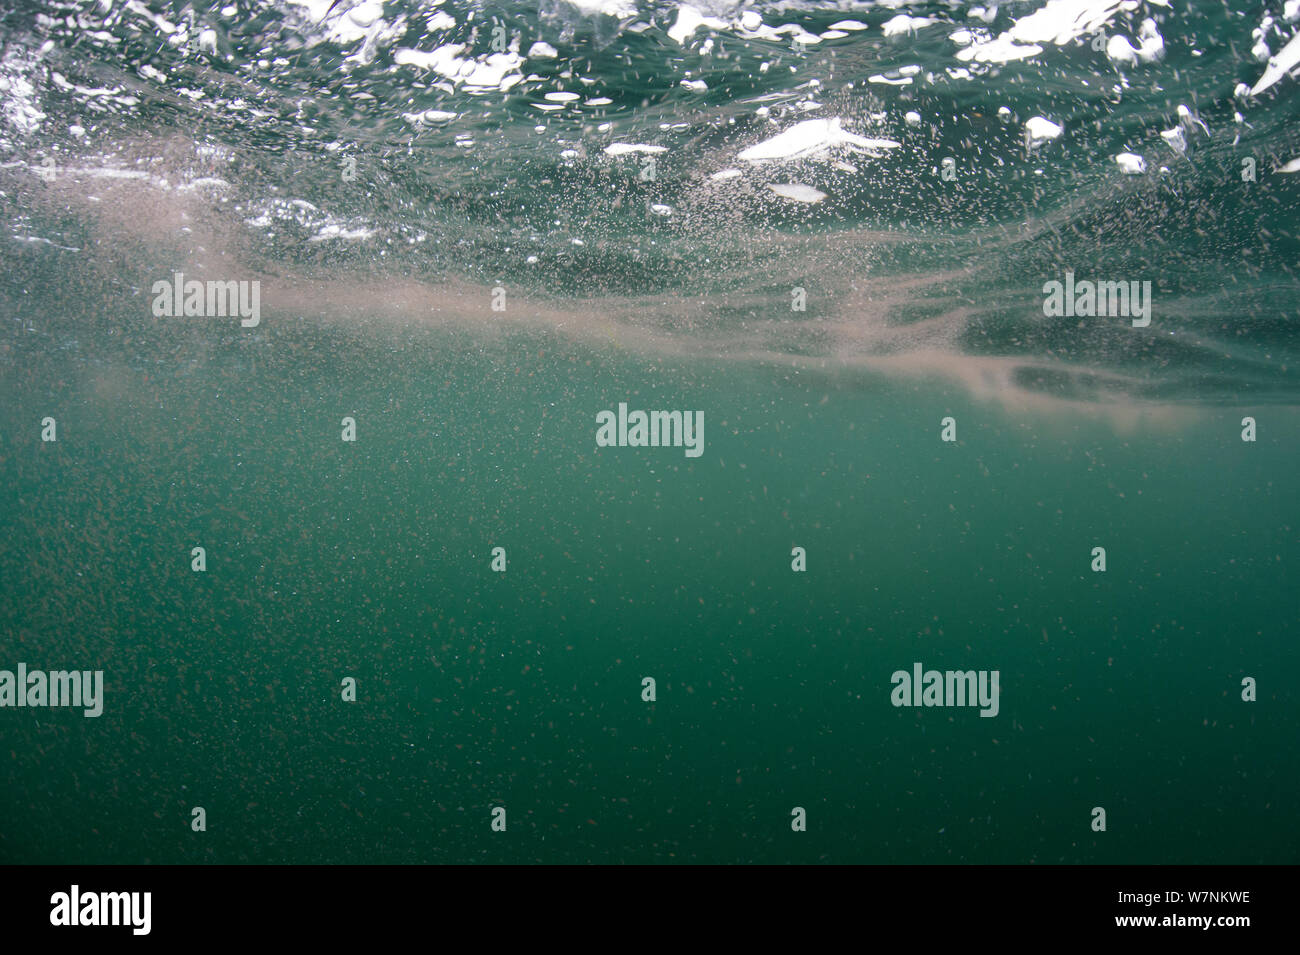 Copepoden (Calanus finmarchicus) Aggregierte an der Oberfläche (Reverse diel Migration) eine Nahrungsquelle für Riesenhaie, Cairns von Coll, Insel Coll, Innere Hebriden, Schottland, UK, North East Atlantic Ocean, Juni Stockfoto